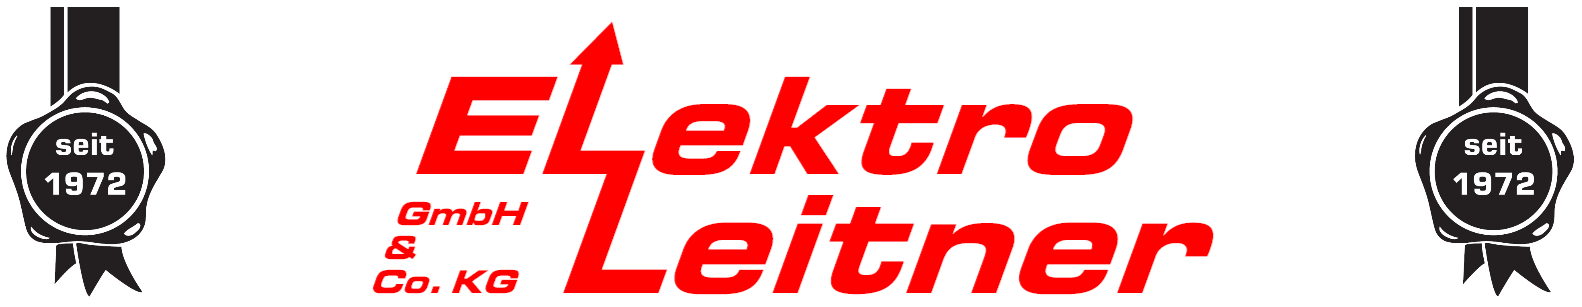 Elektro-Leintern GmbH & Co.KG